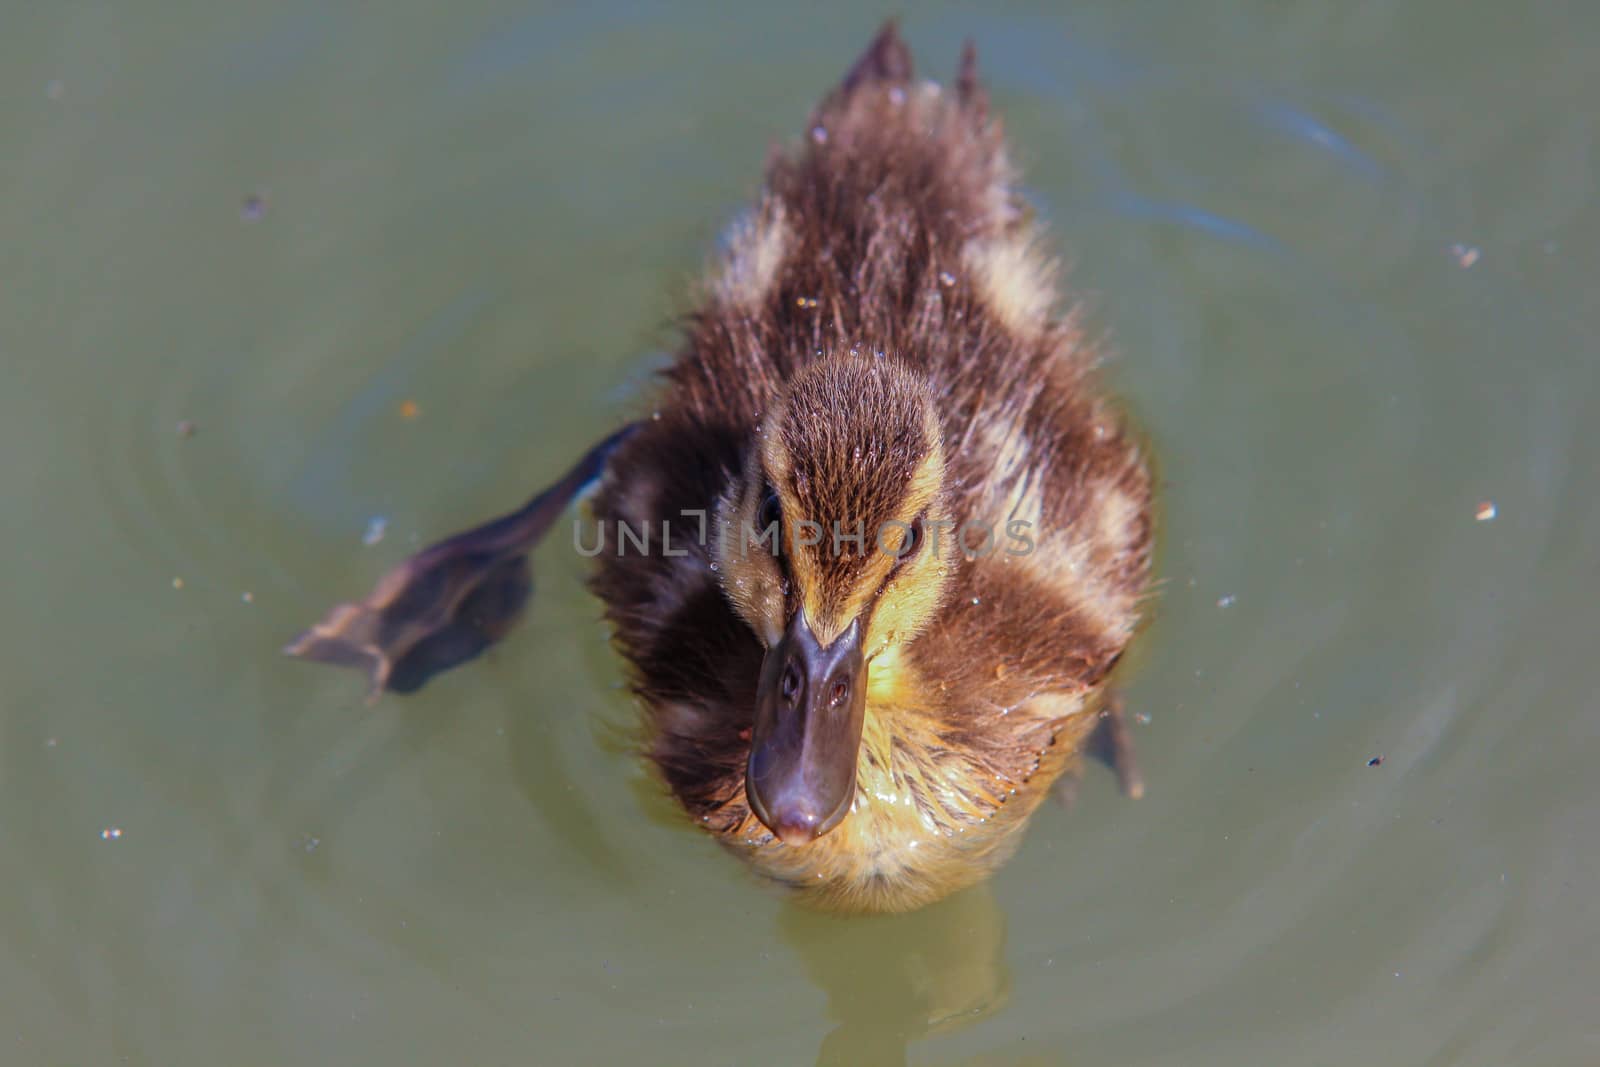 Duckling at sea by Arvebettum